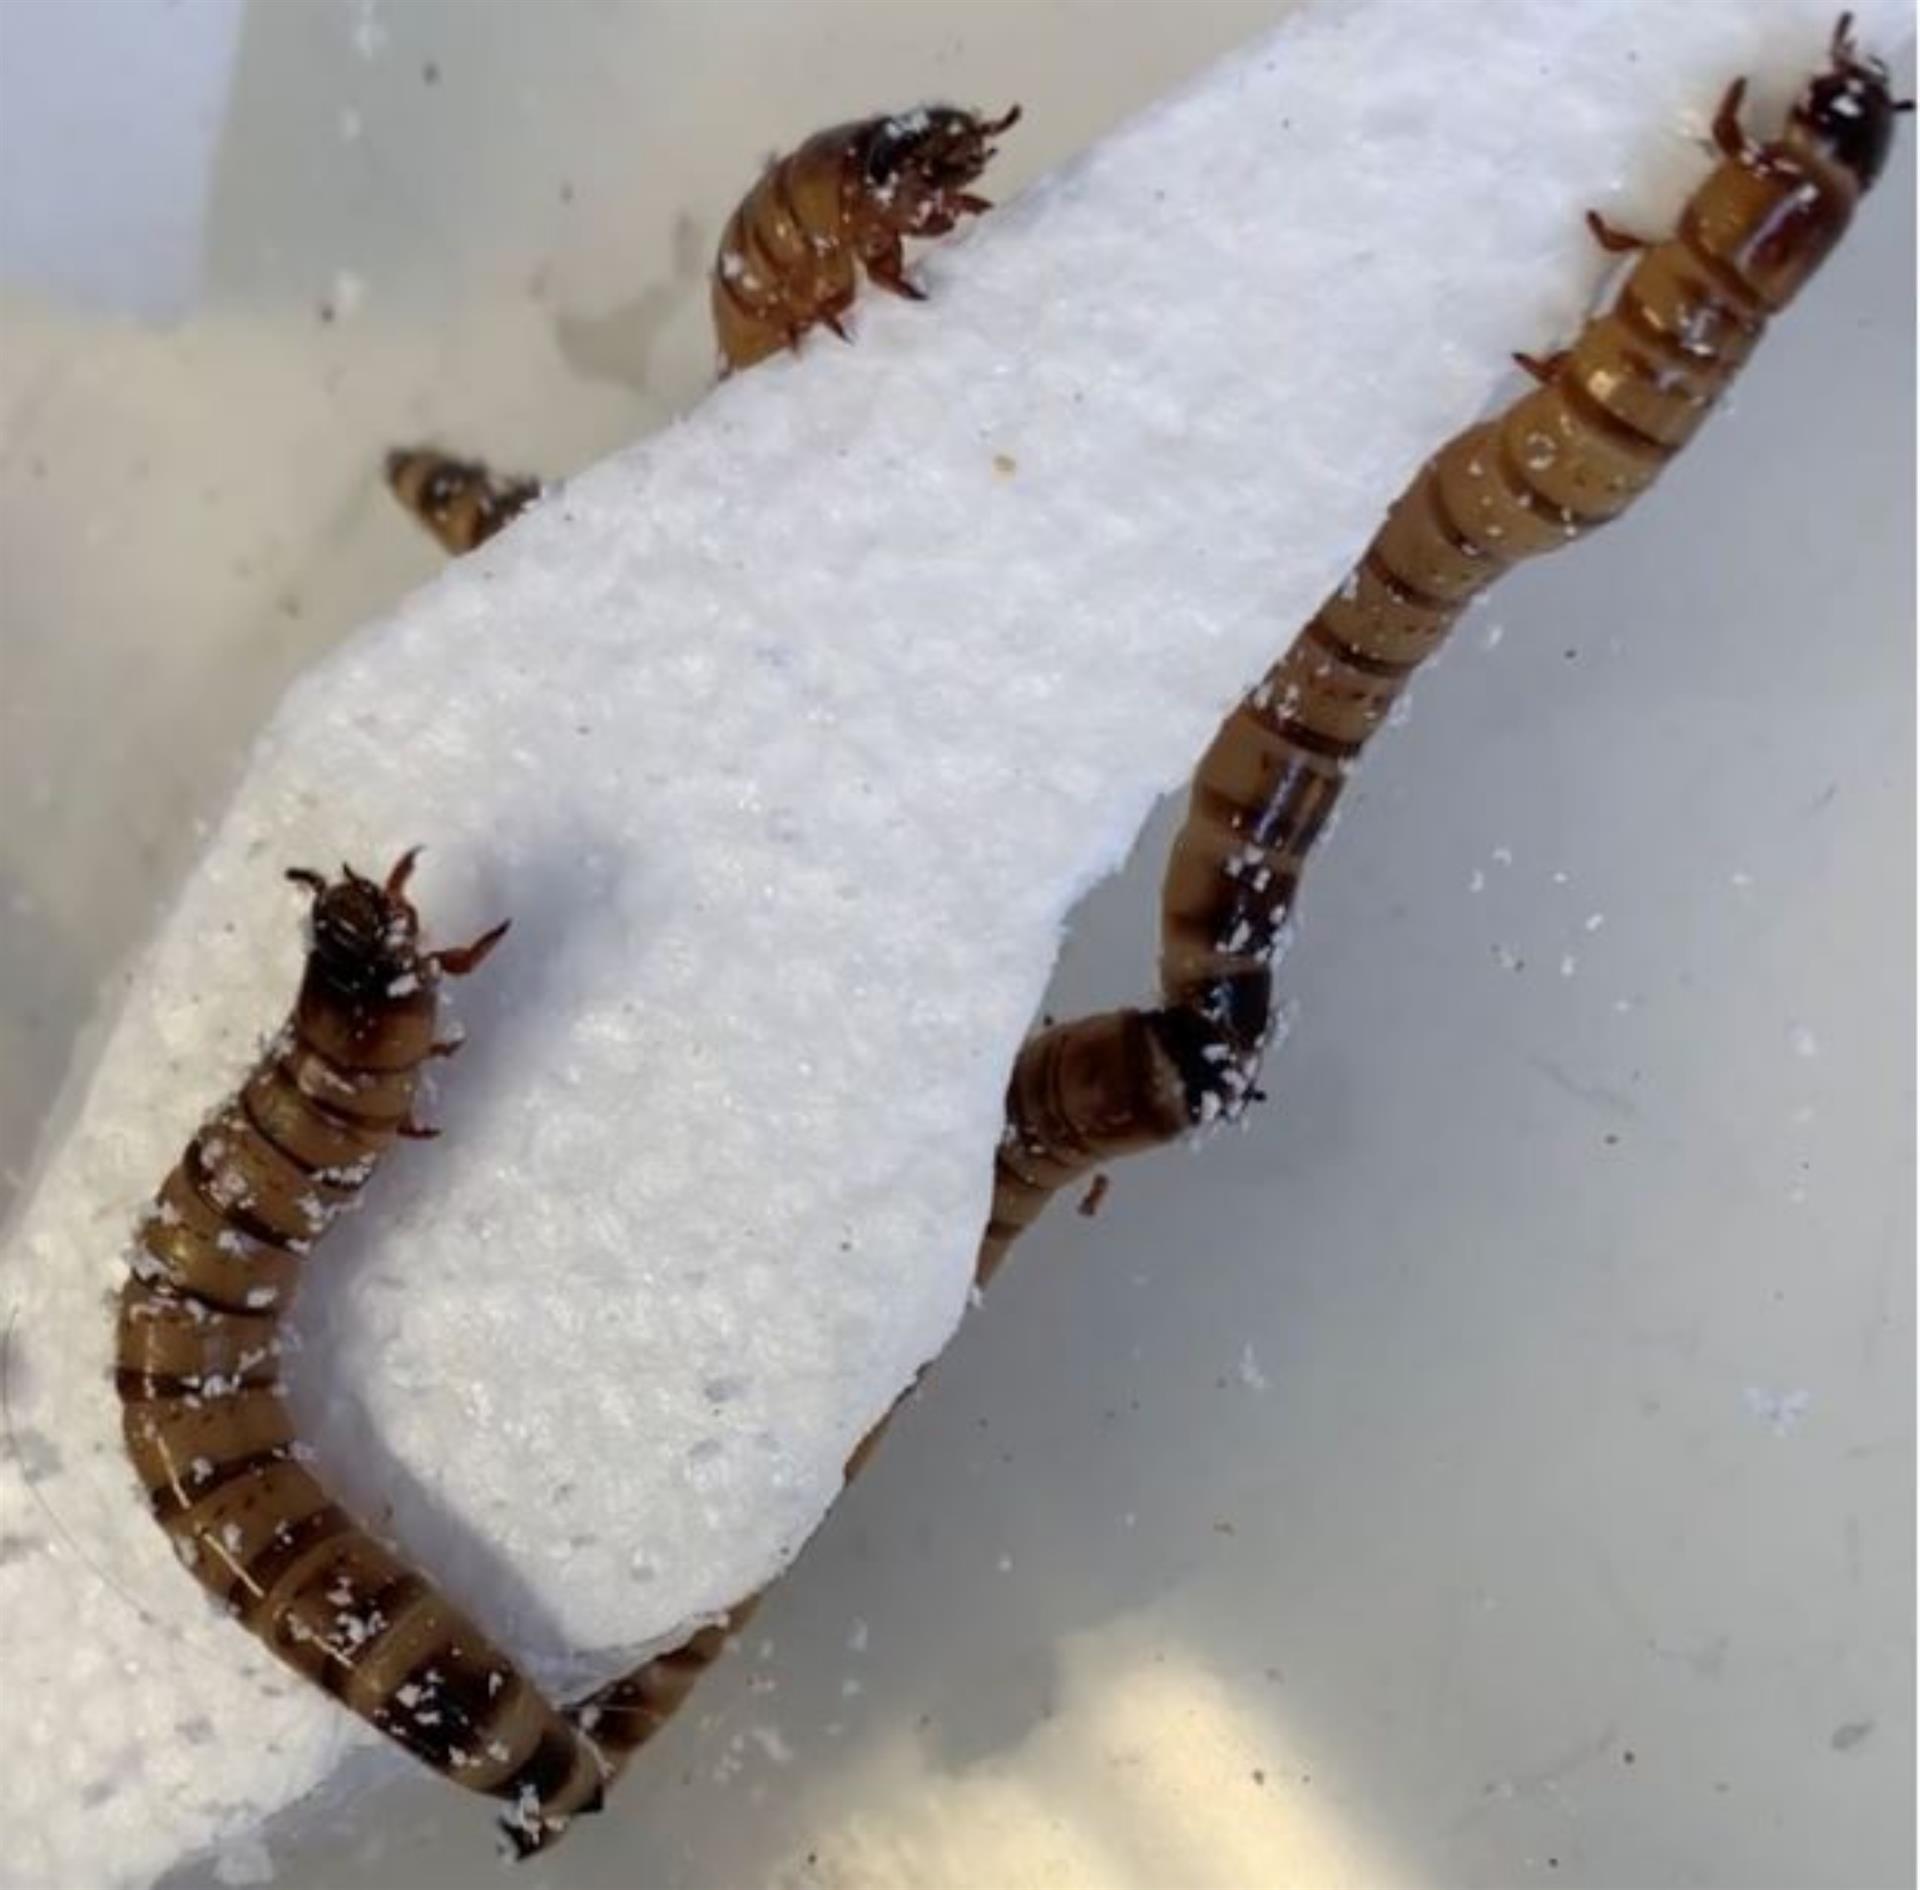 Descubren un gusano que puede alimentarse con poliestireno